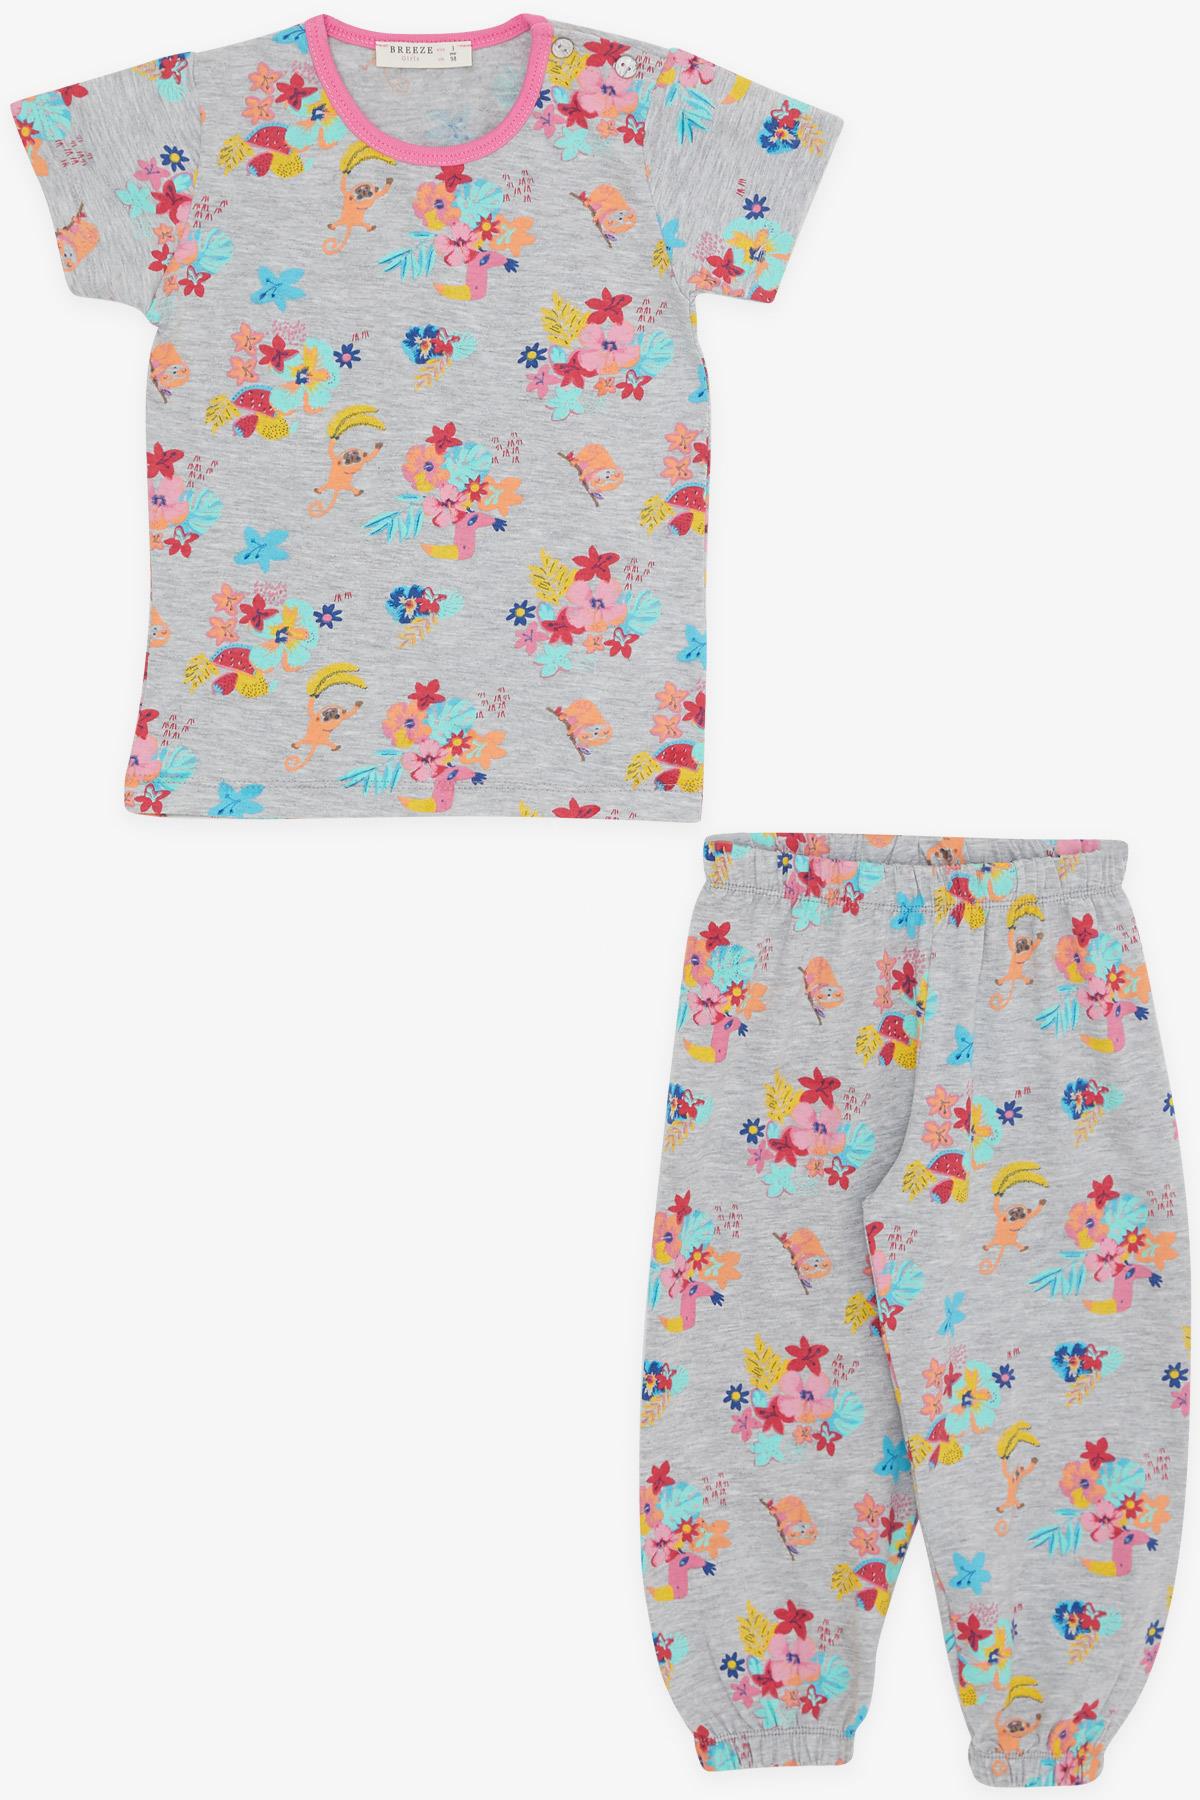 Kız Bebek Kısa Kollu Pijama Takımı Safari Temalı Gri Melanj 9 Ay-3 Yaş -  Eğlenceli Kız Çocuk Pijamaları| Breeze